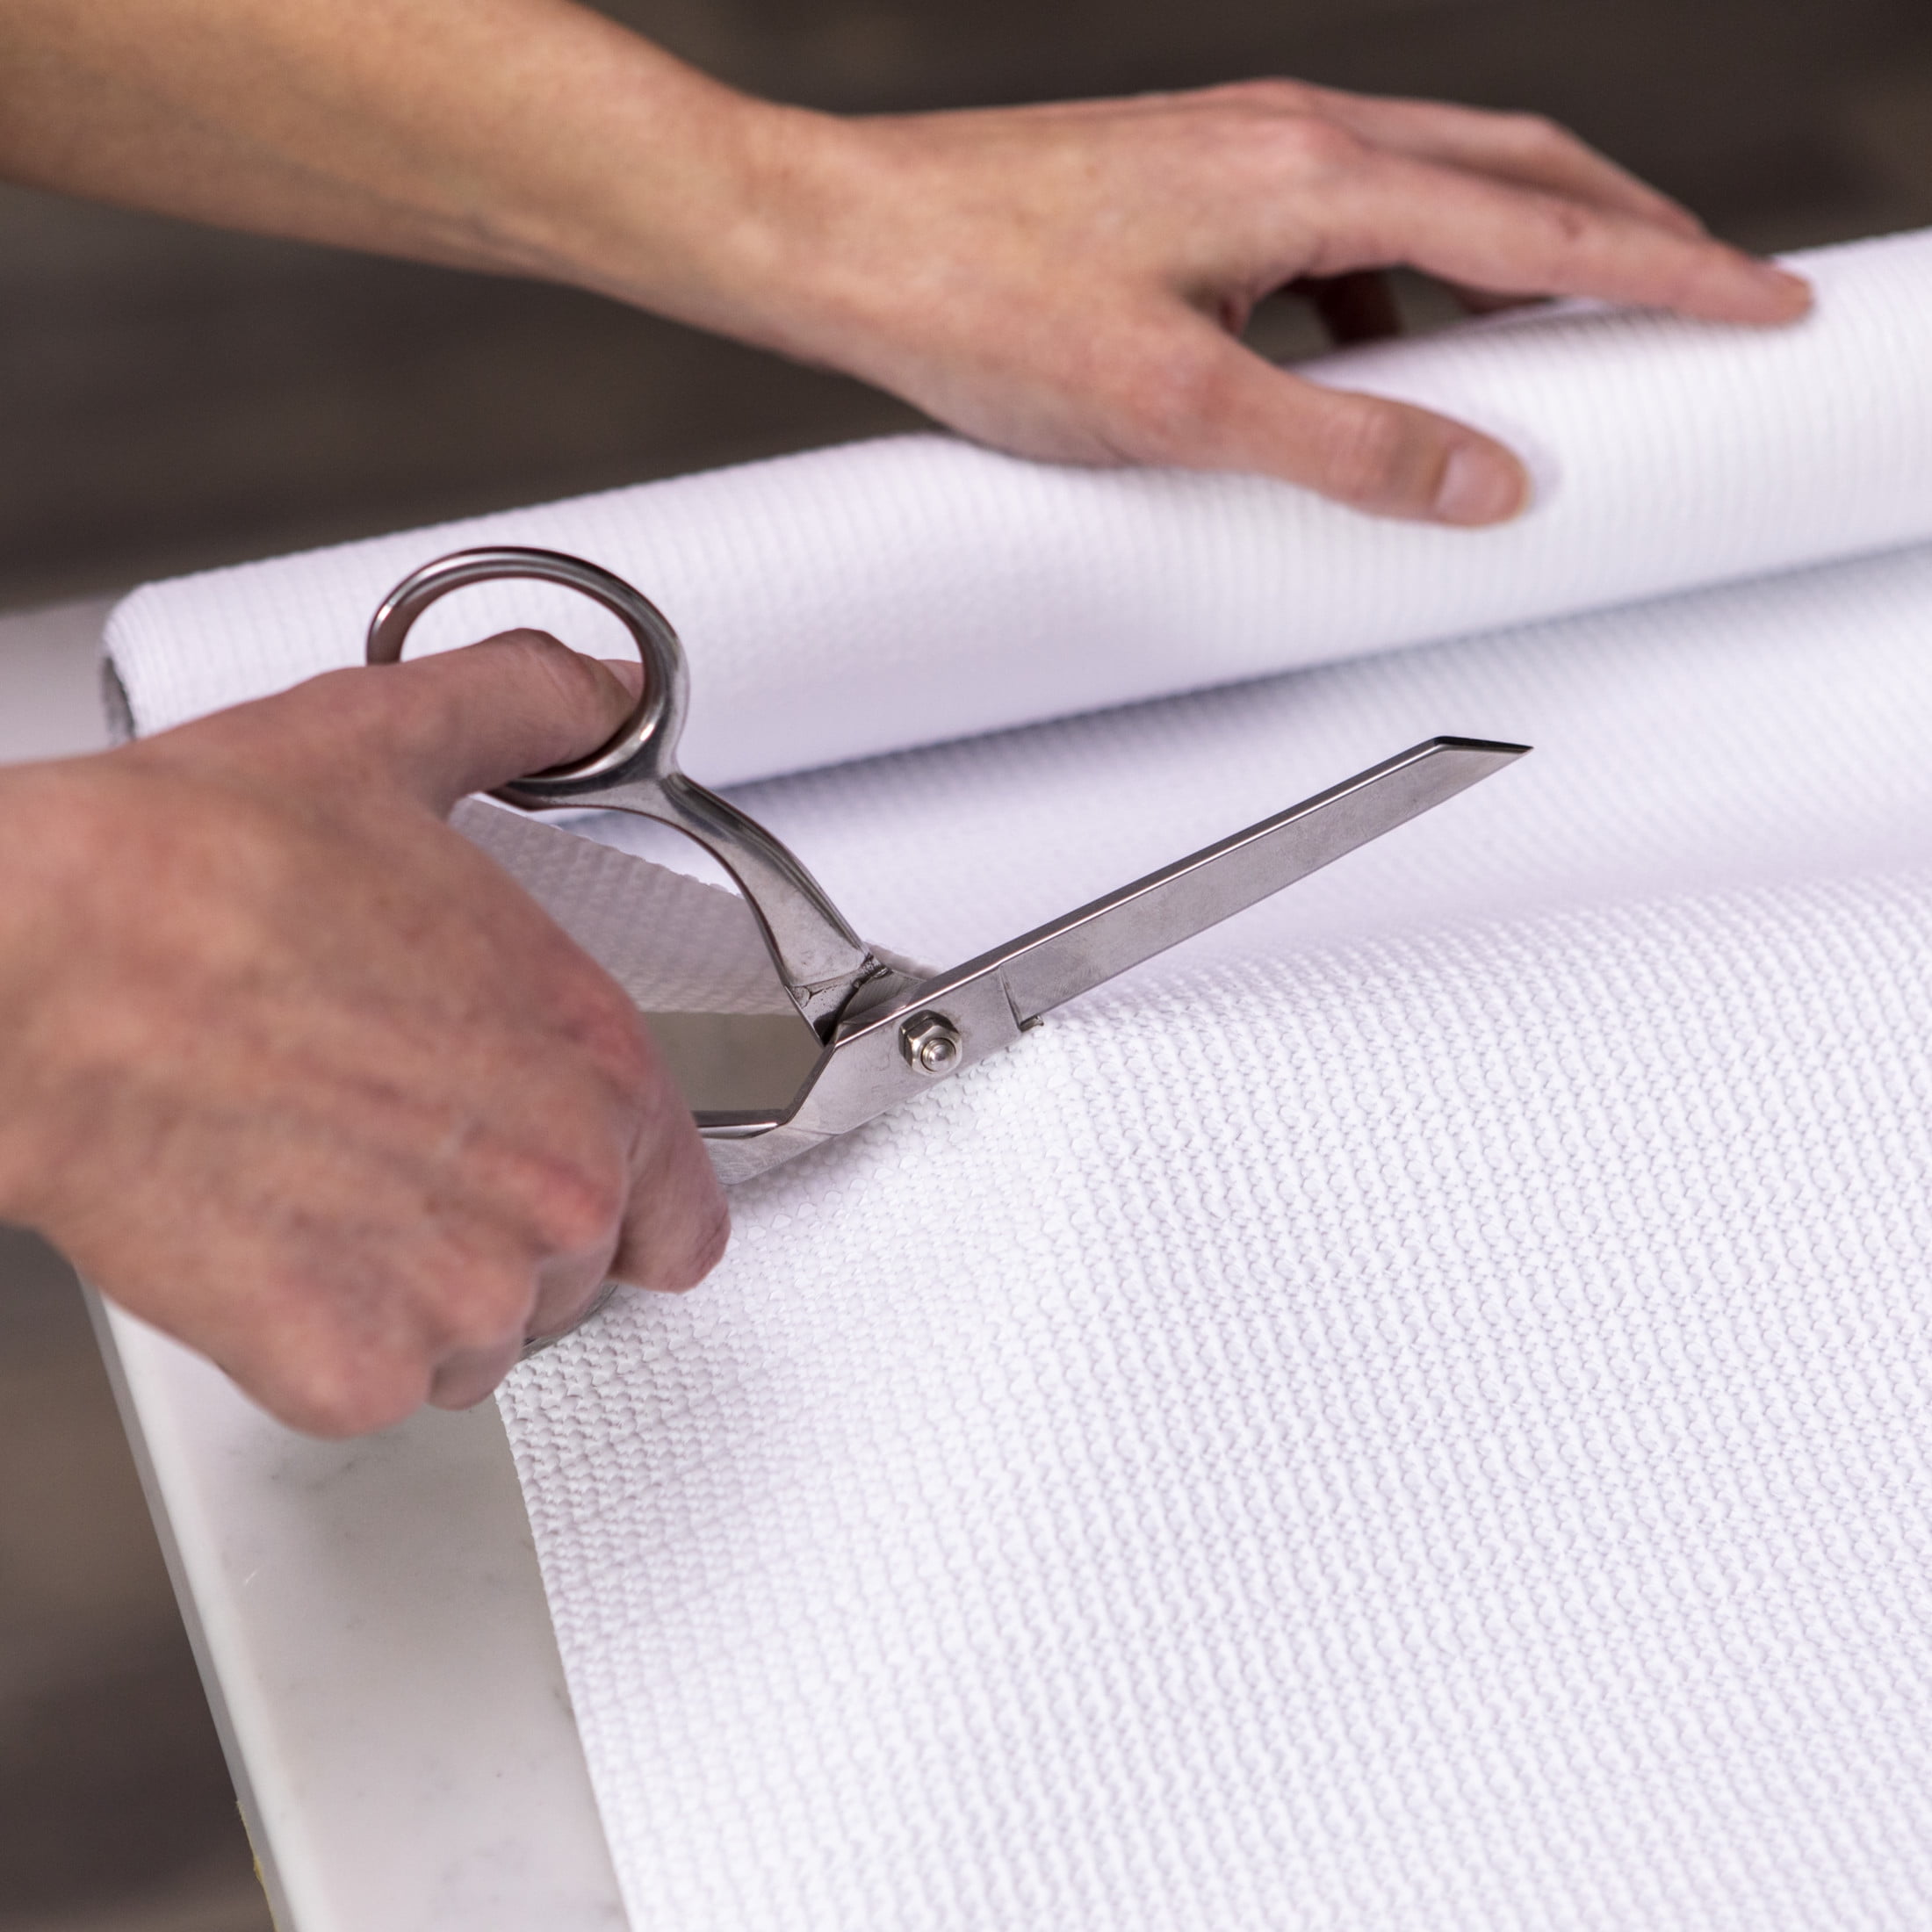 Select Grip? EasyLiner® Brand Shelf Liner - White, 20 in. x 18 ft.